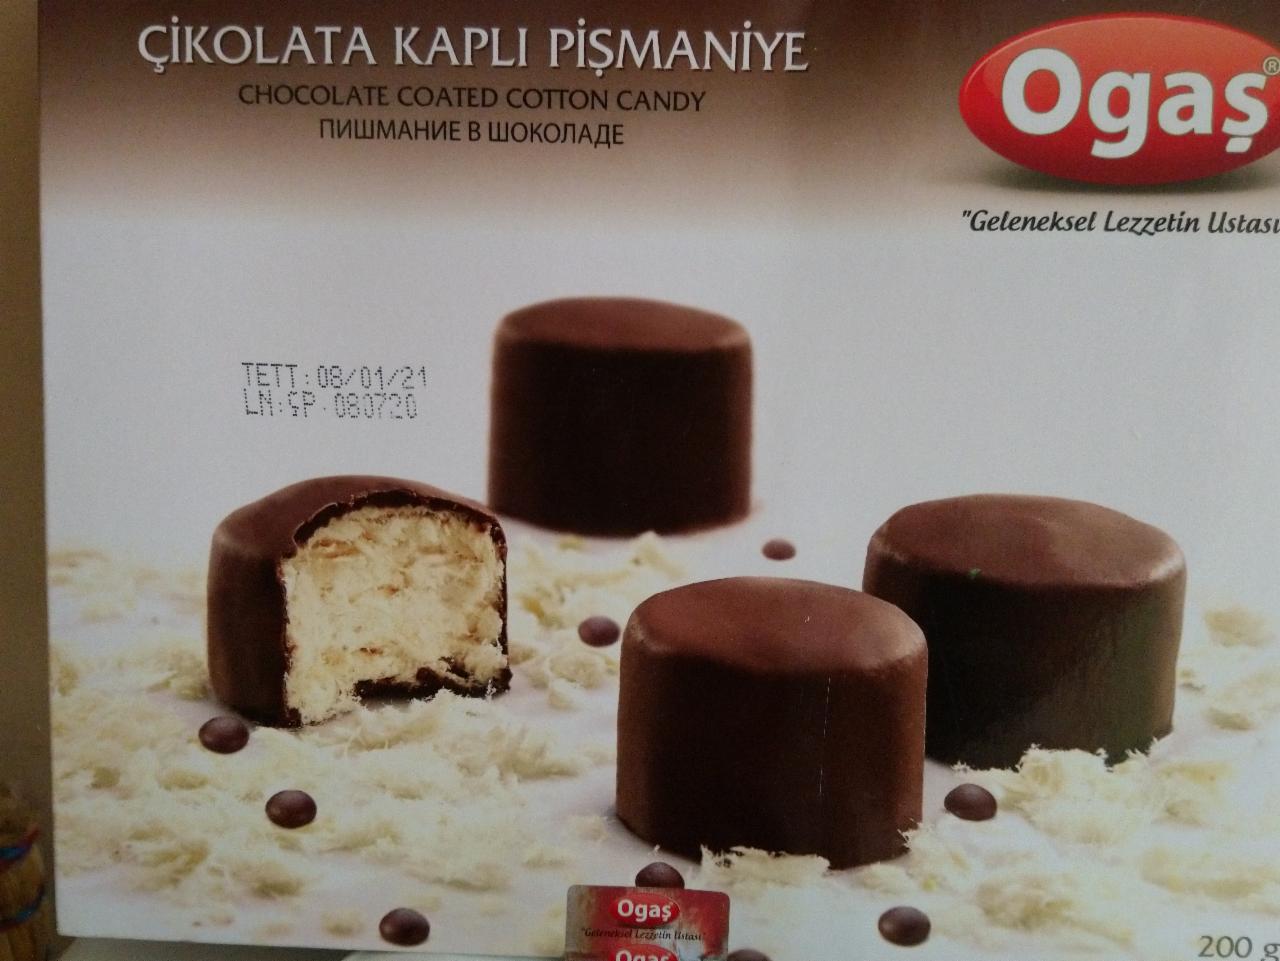 Фото - десерт пишмание в шоколаде Ogas